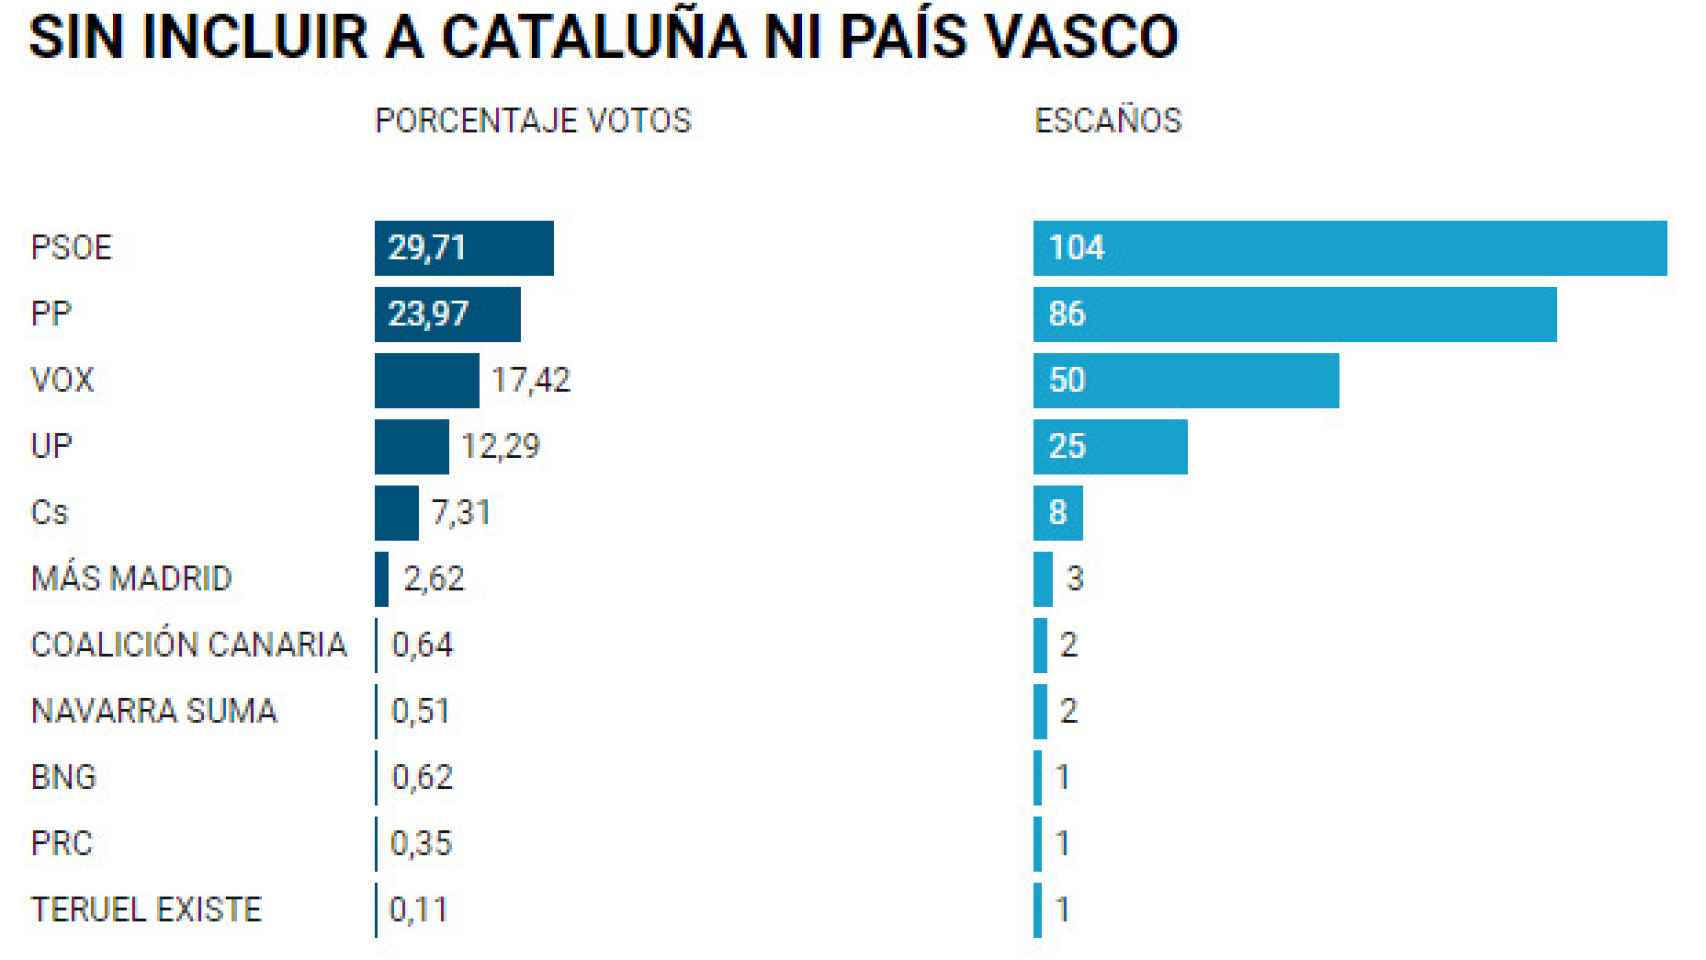 Sin contar con País Vasco y Cataluña, en noviembre de 2019 las fuerzas de centro-derecha eran mayoritarias.